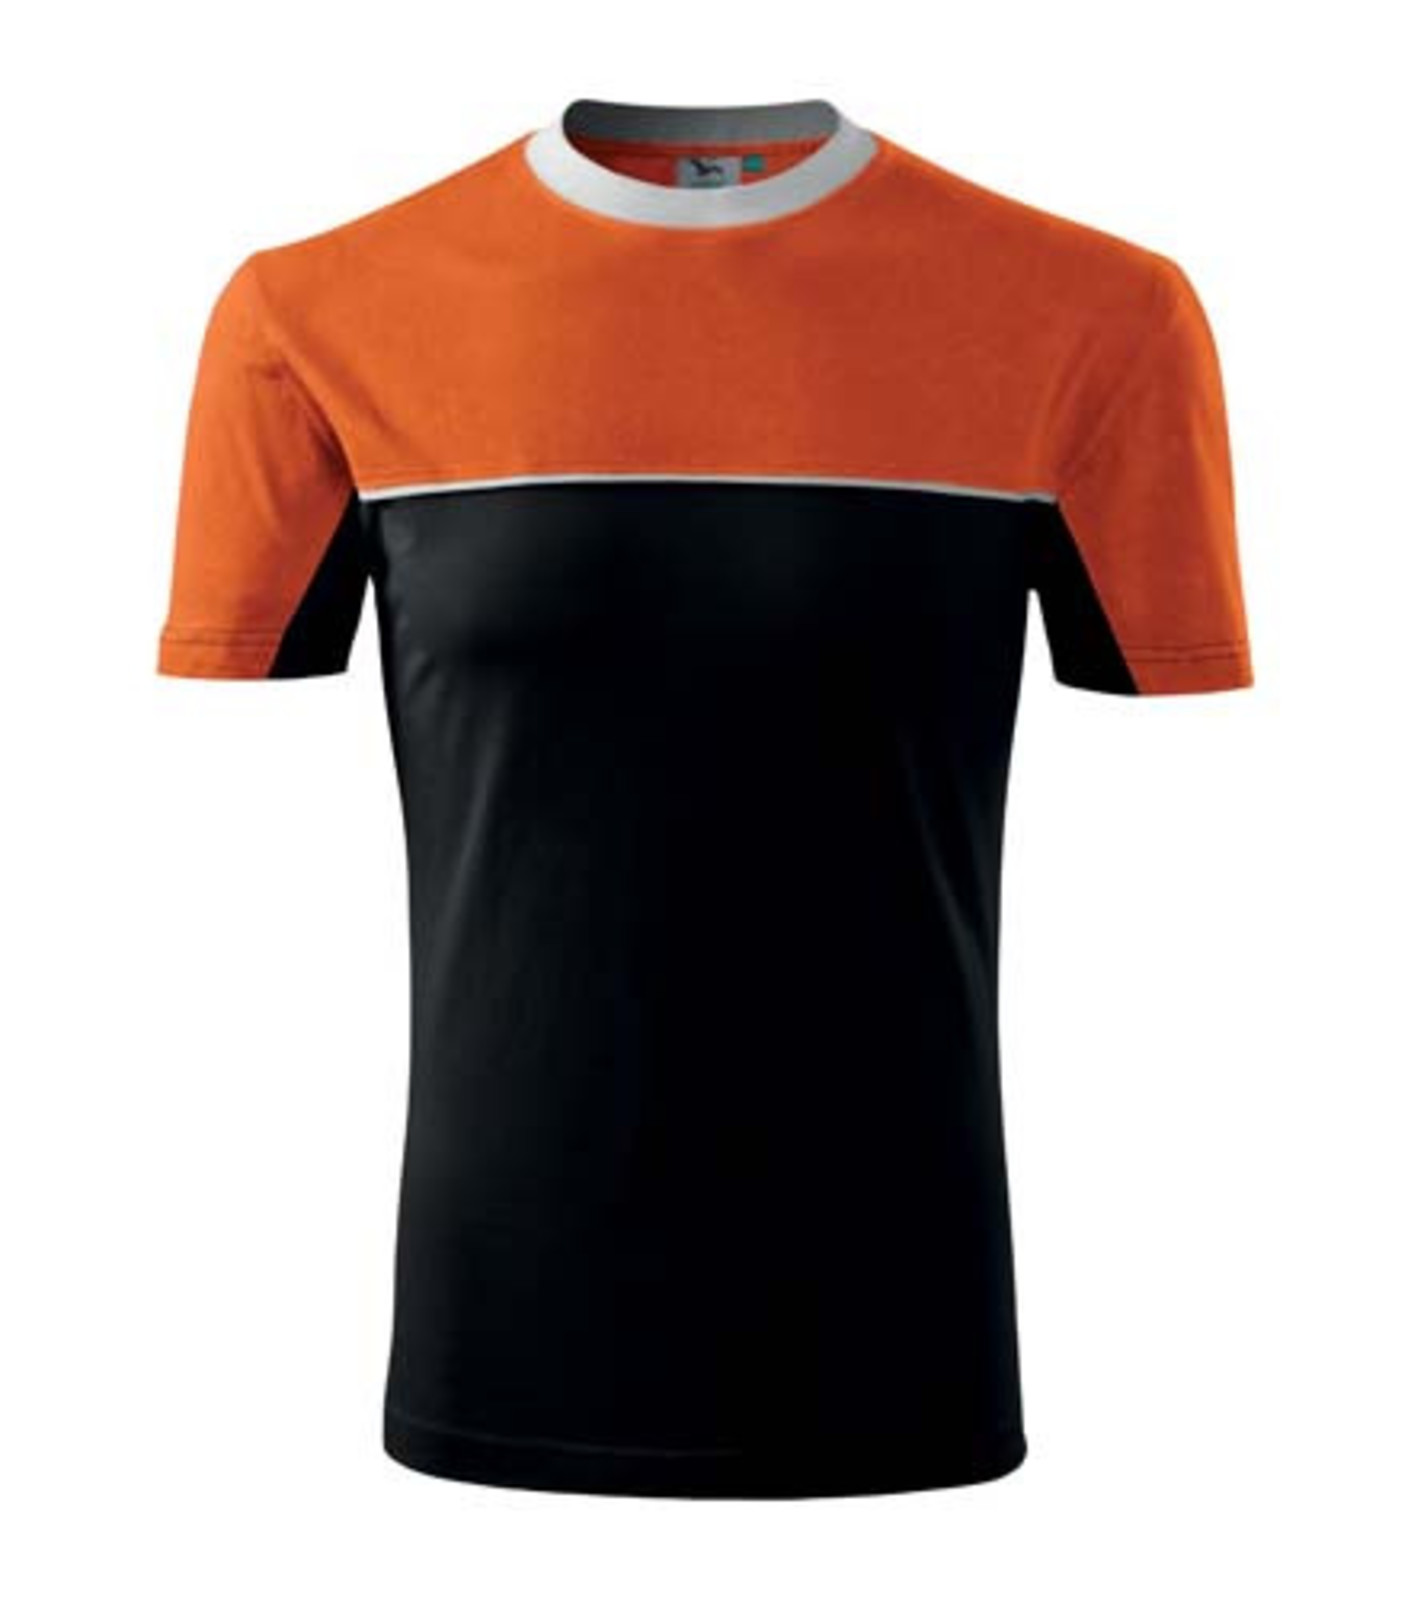 Unisex tričko Rimeck Colormix 109 - veľkosť: M, farba: čierna/oranžová